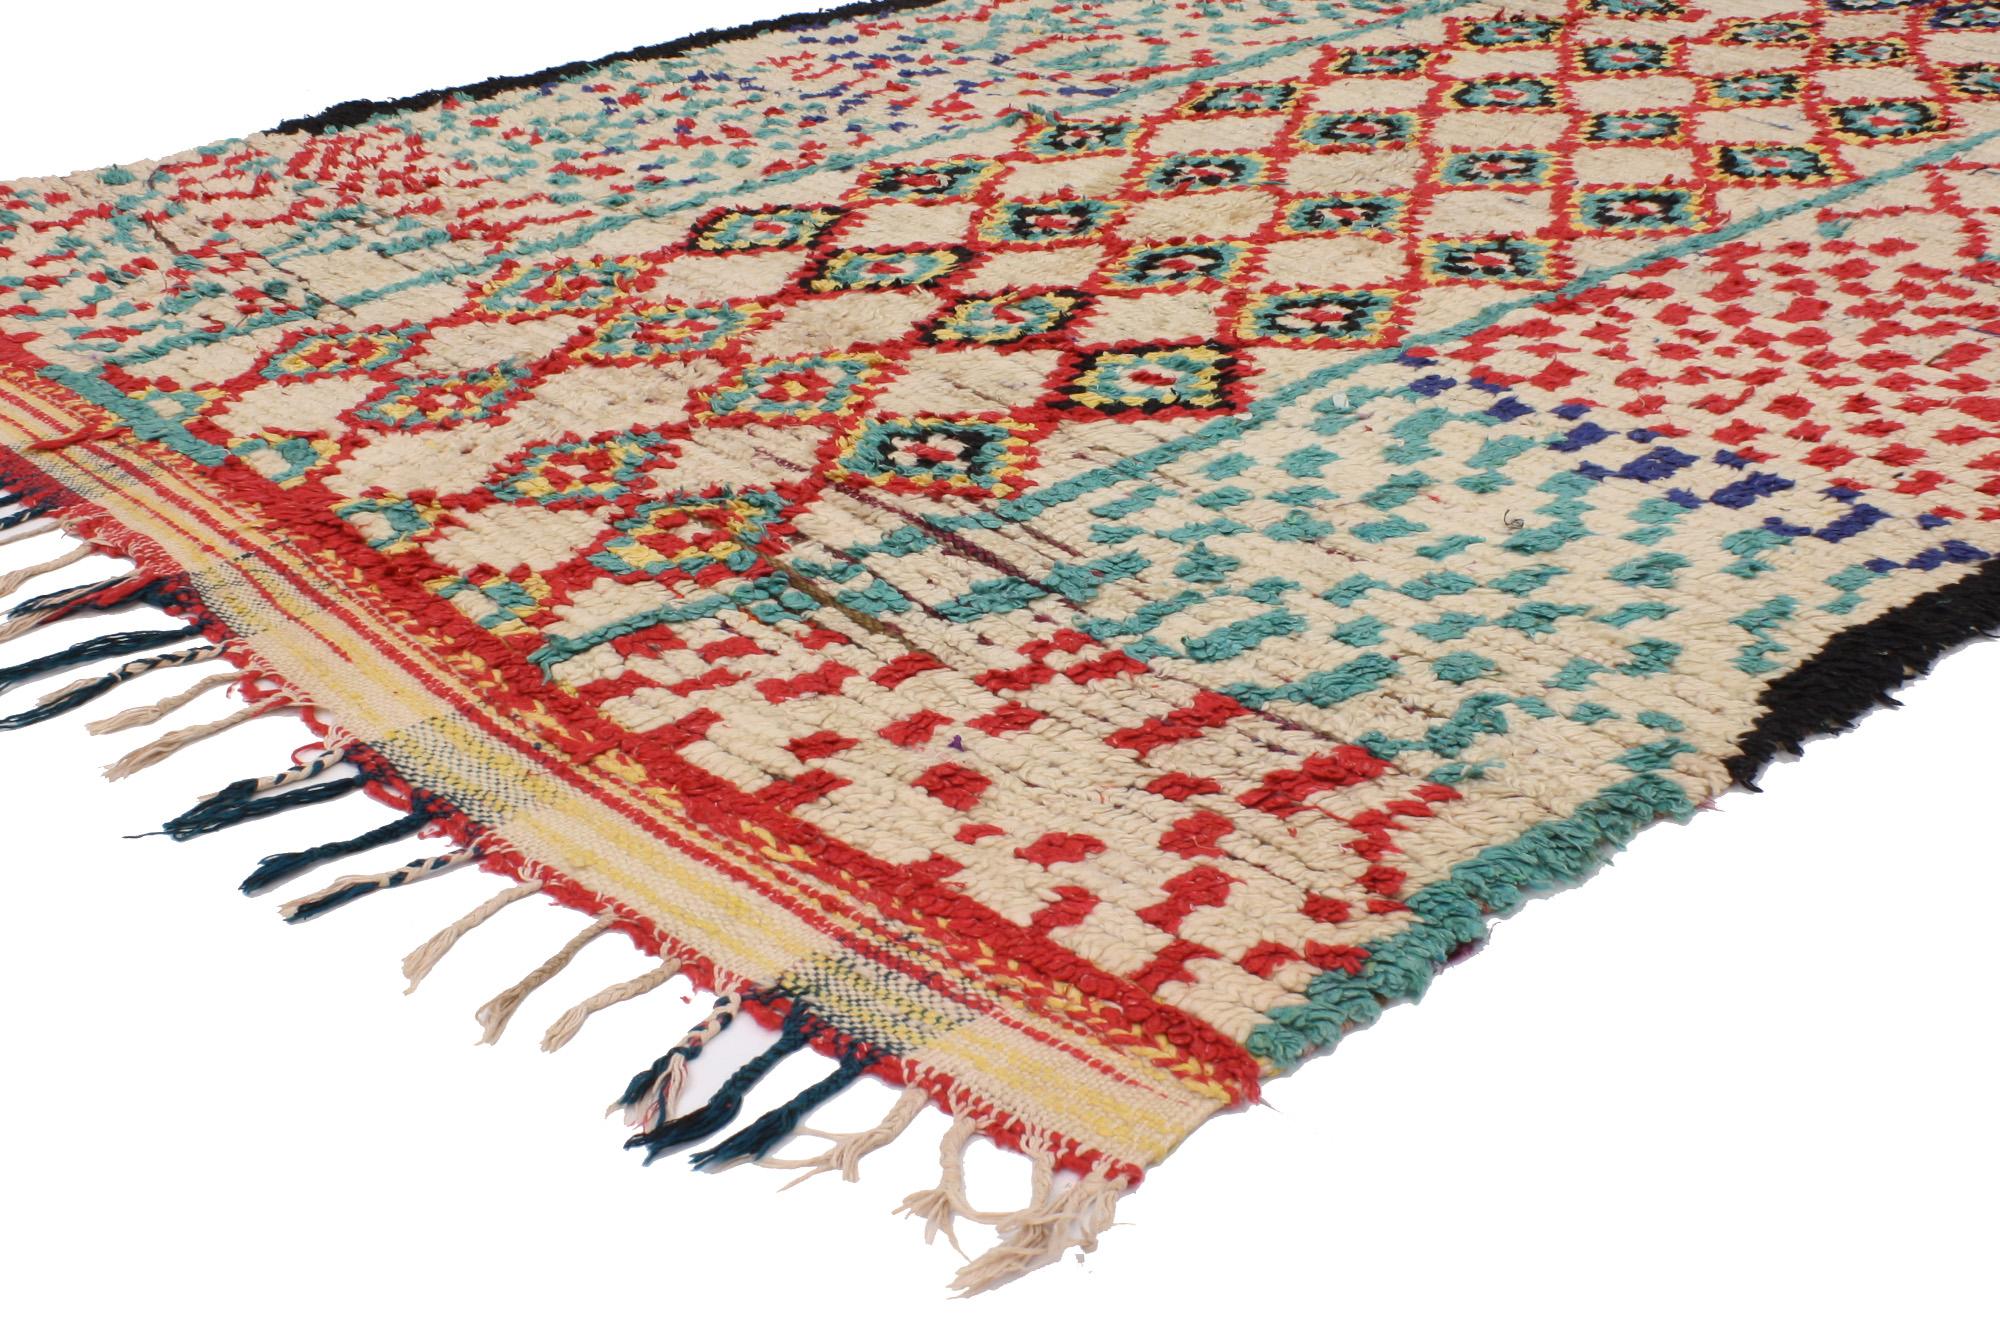 20400 Vintage Marokkanischer Azilal-Teppich, 04'04 x 08'06. Treten Sie ein in das zauberhafte Reich der Azilal-Teppiche, wo jeder Faden eine Geschichte erzählt, die von geschickten Kunsthandwerkern inmitten der dynamischen Landschaften